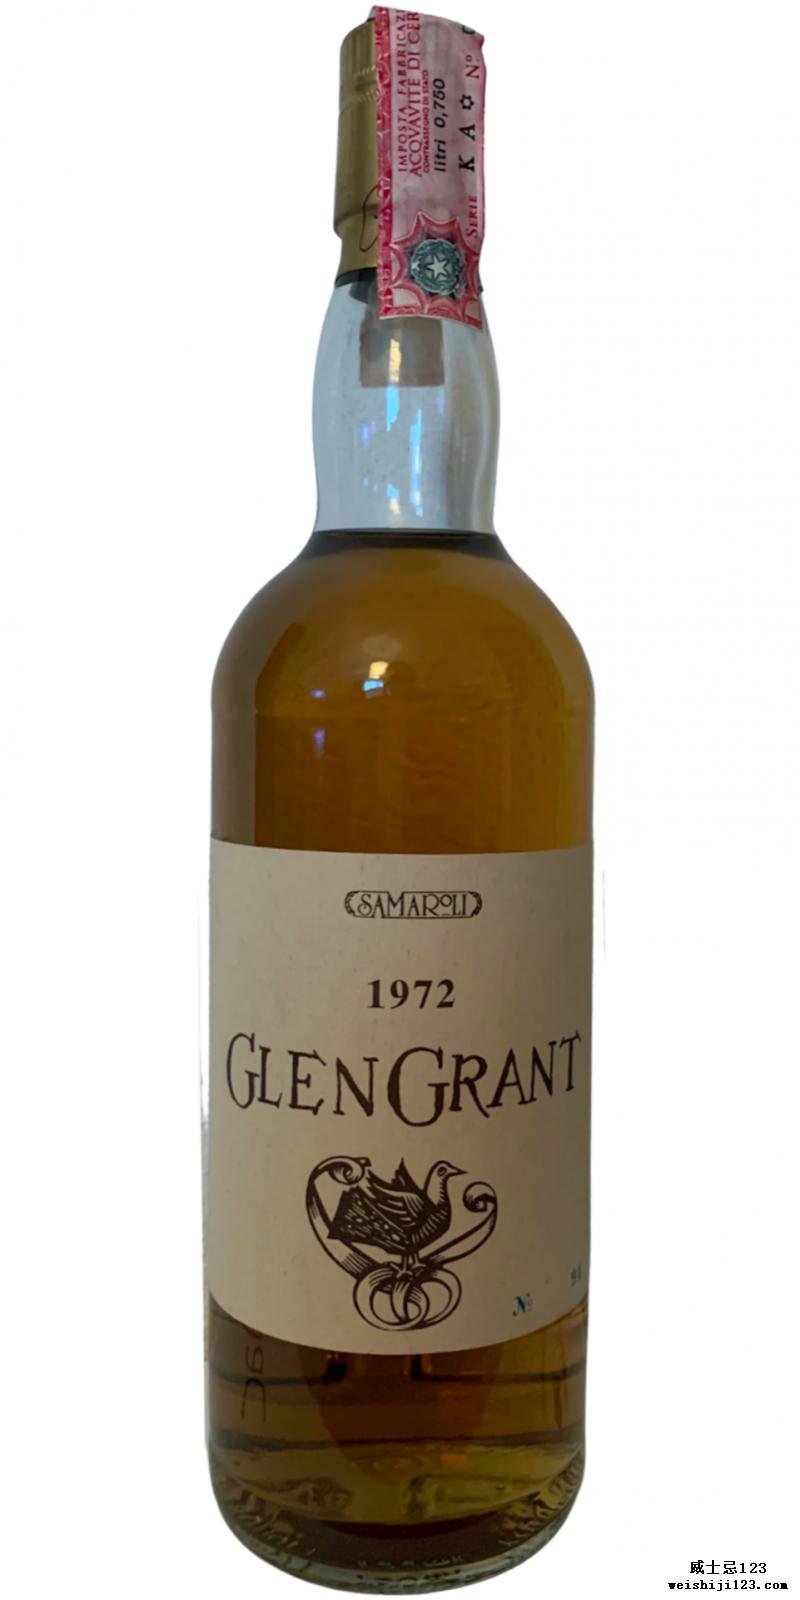 Glen Grant 1972 Sa